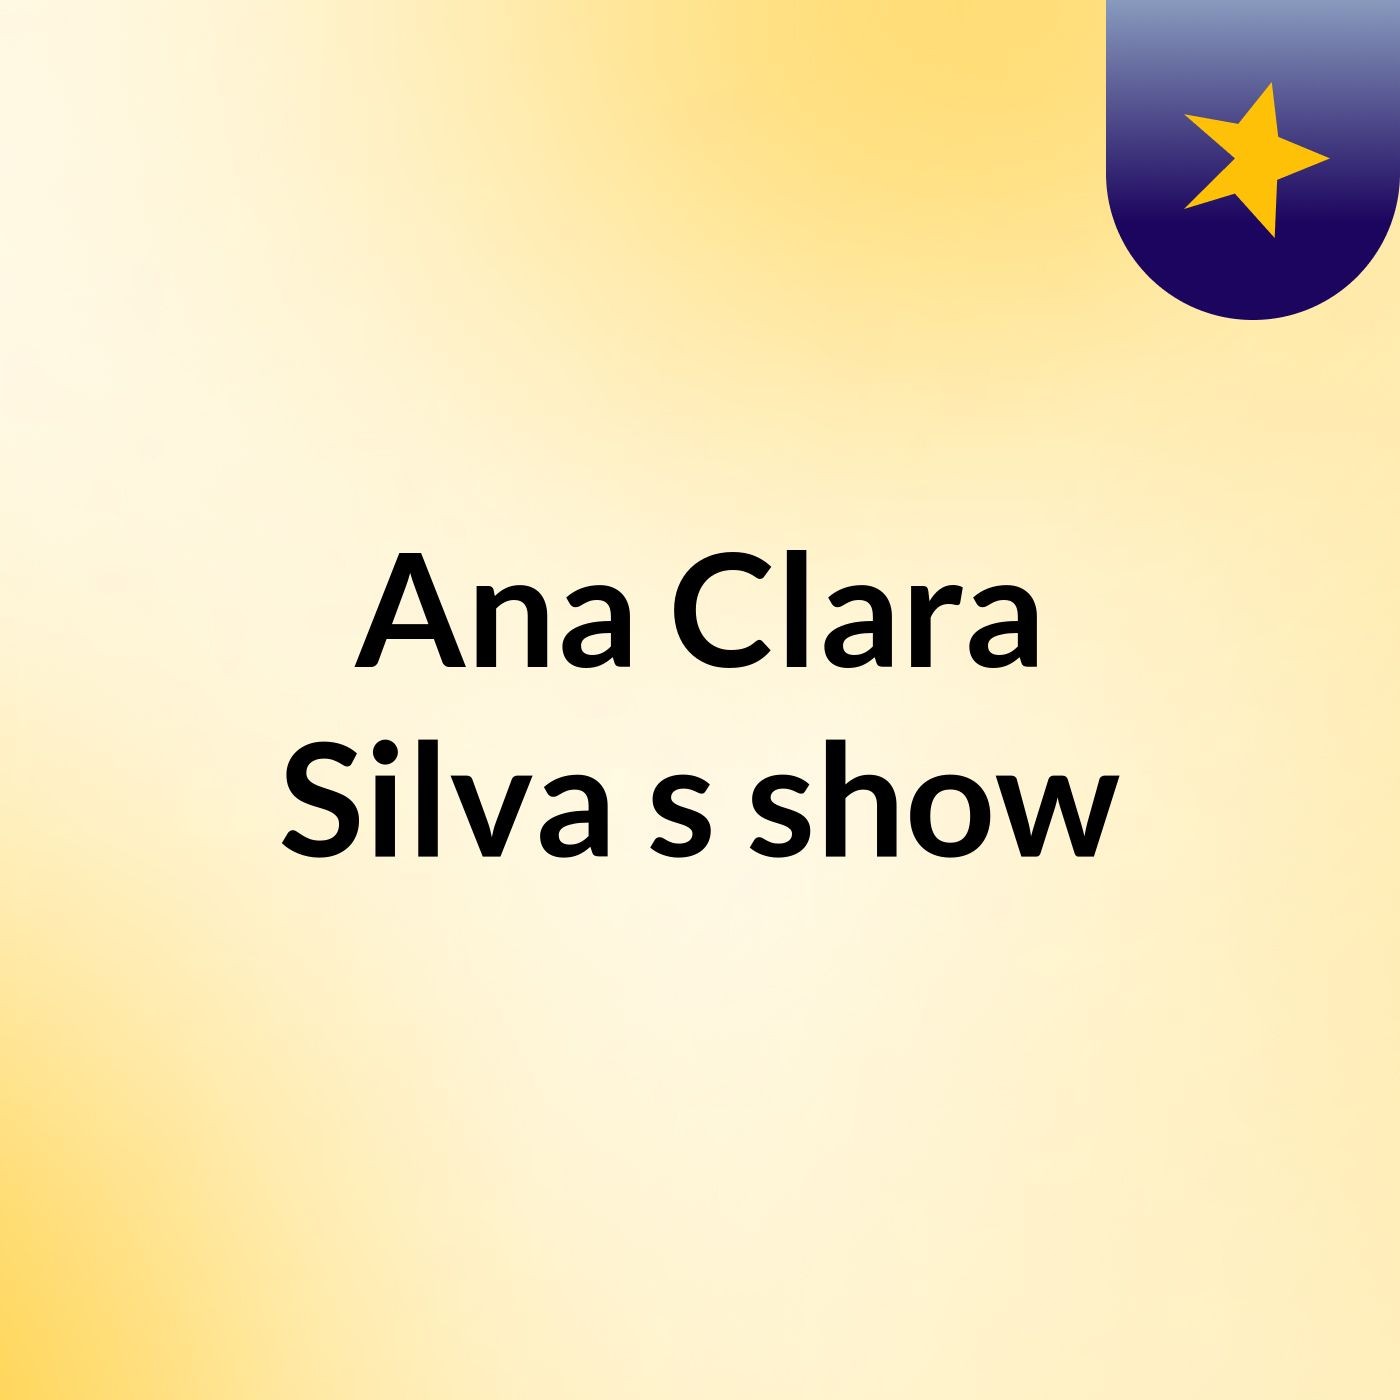 Ana Clara Silva's show